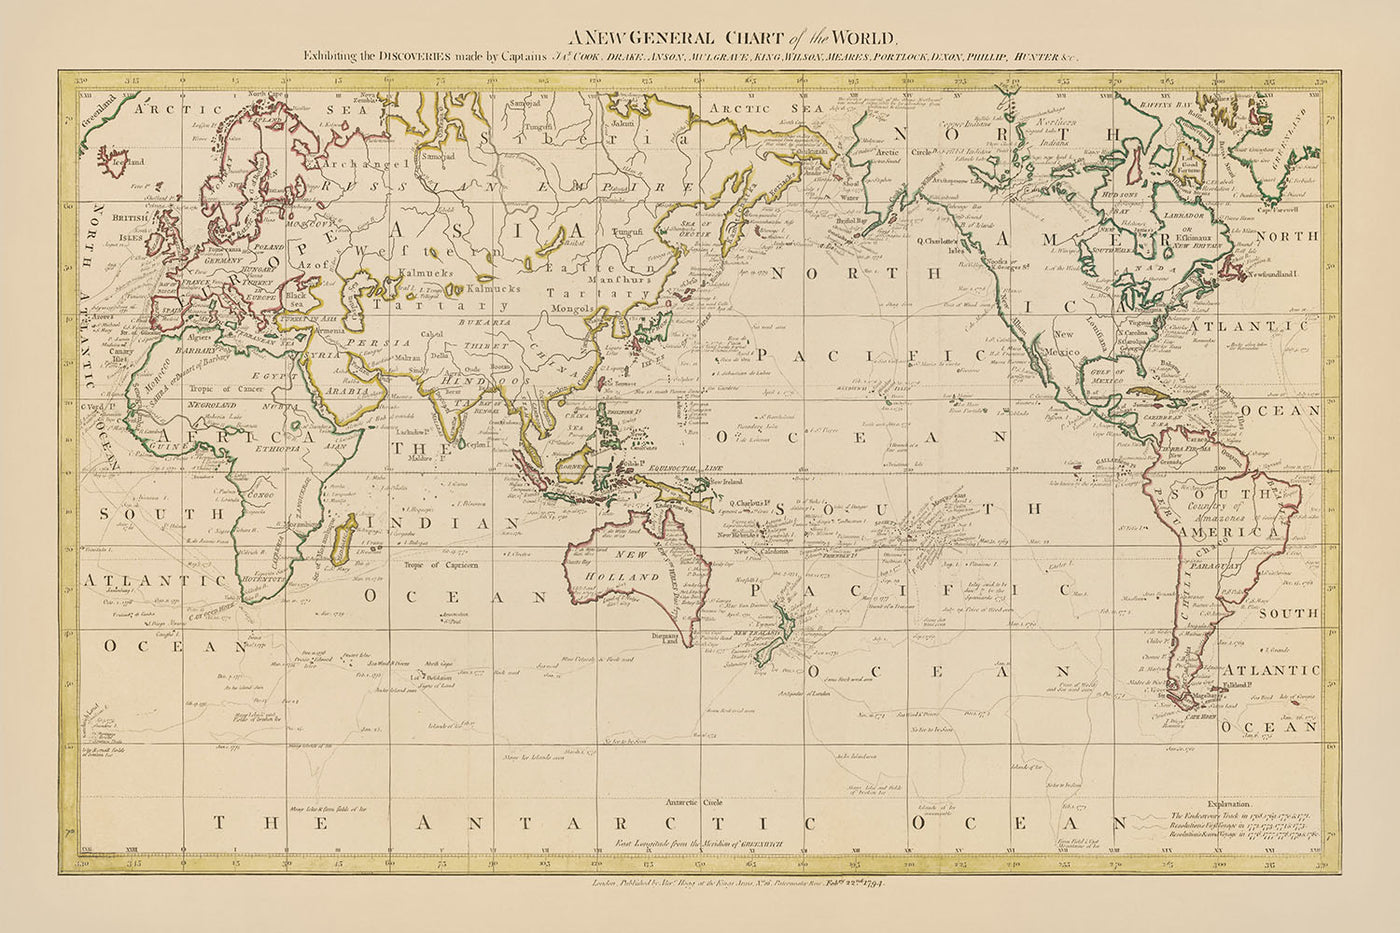 Mapa del Viejo Mundo del Océano Pacífico por Hogg, 1794: Viajes de Cook, mapa político detallado centrado en el Pacífico